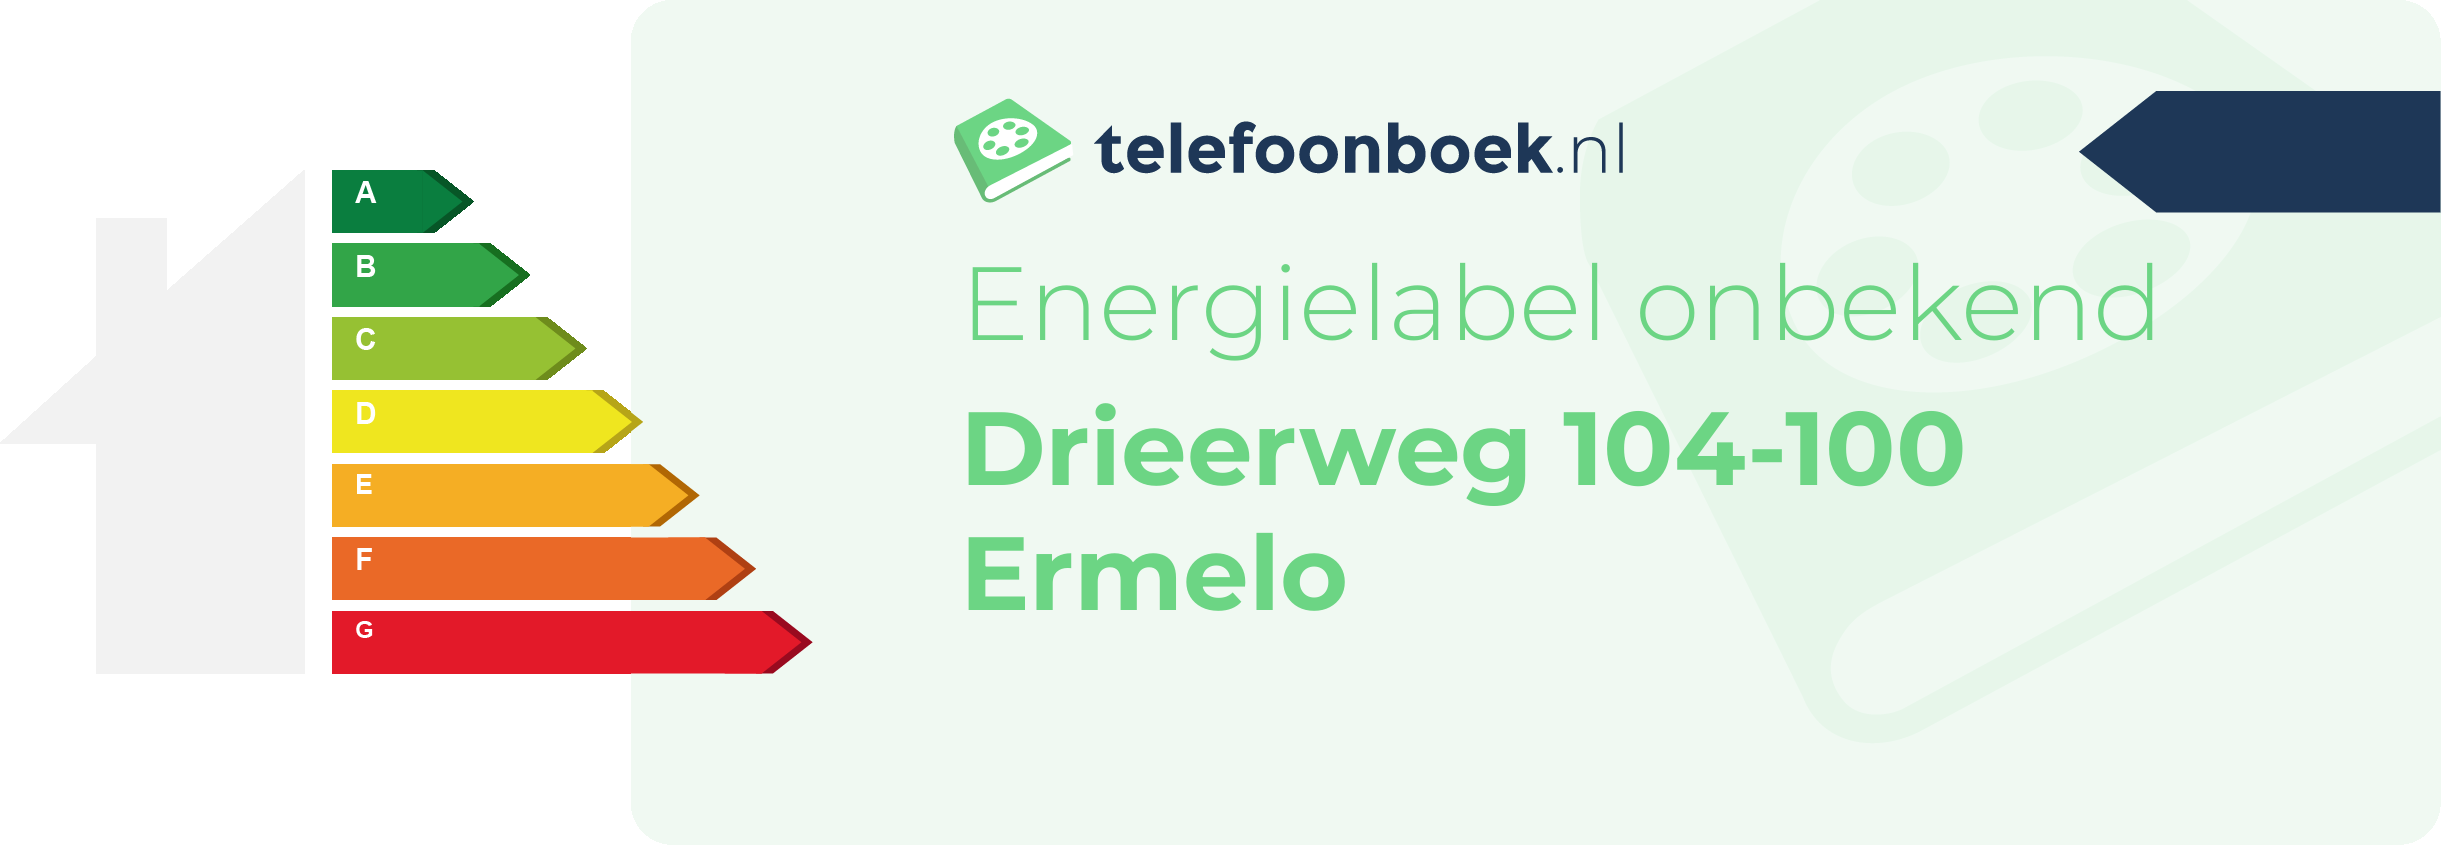 Energielabel Drieerweg 104-100 Ermelo